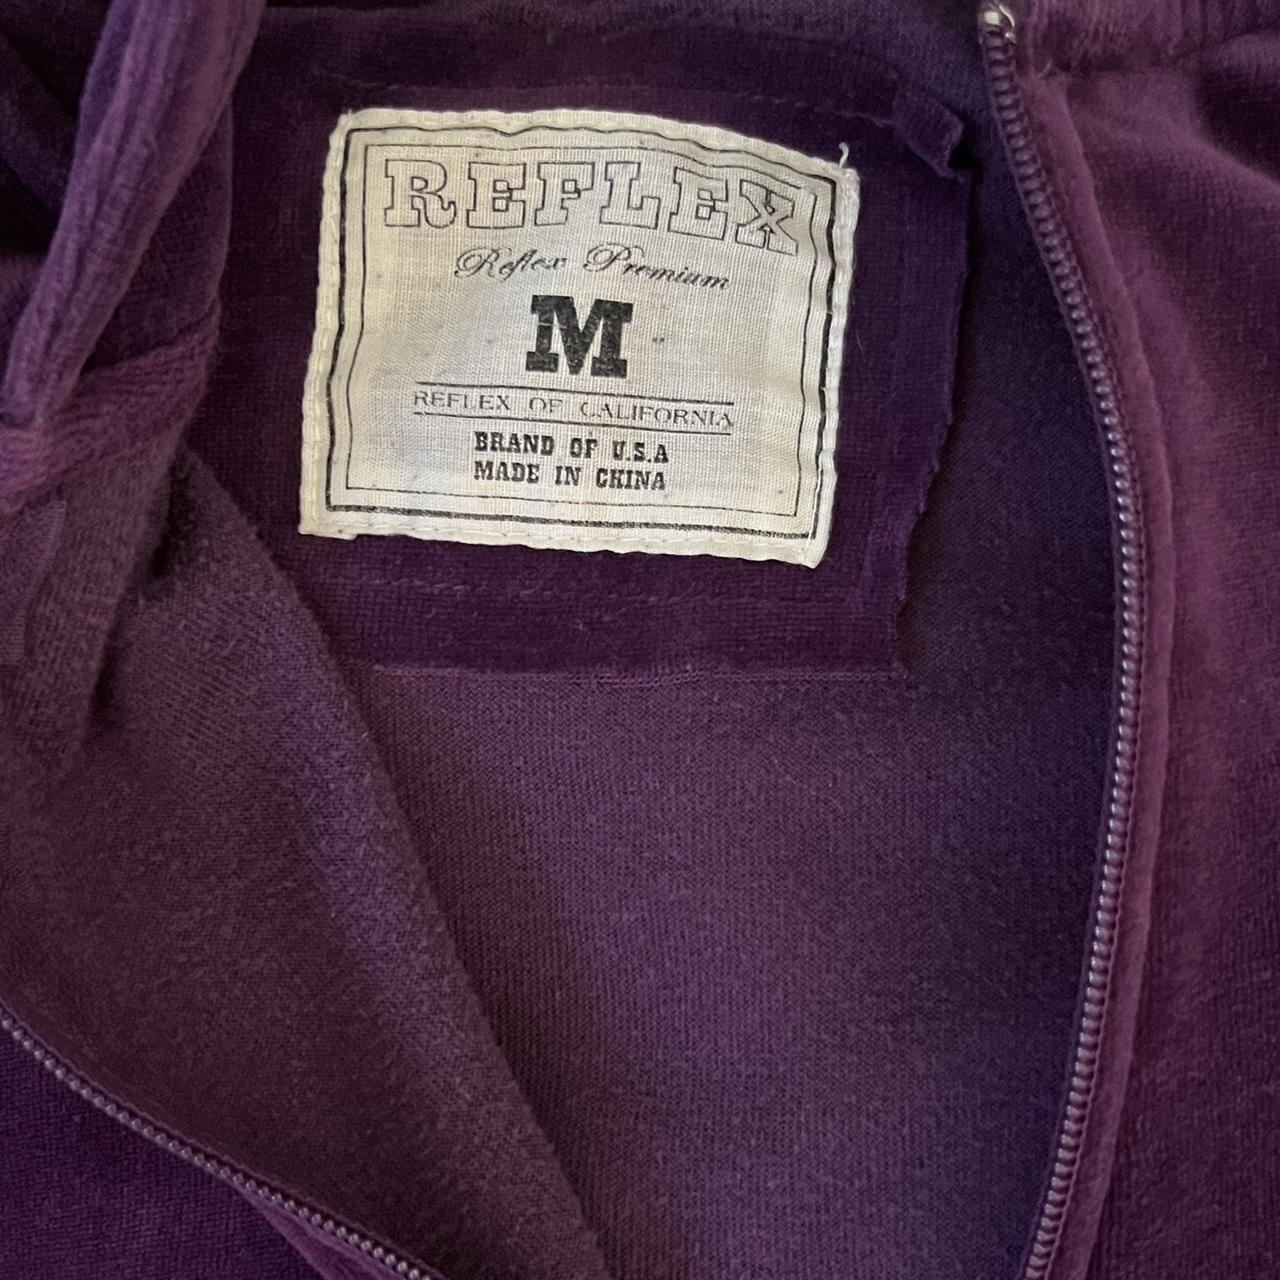 Women's Purple Jacket (2)